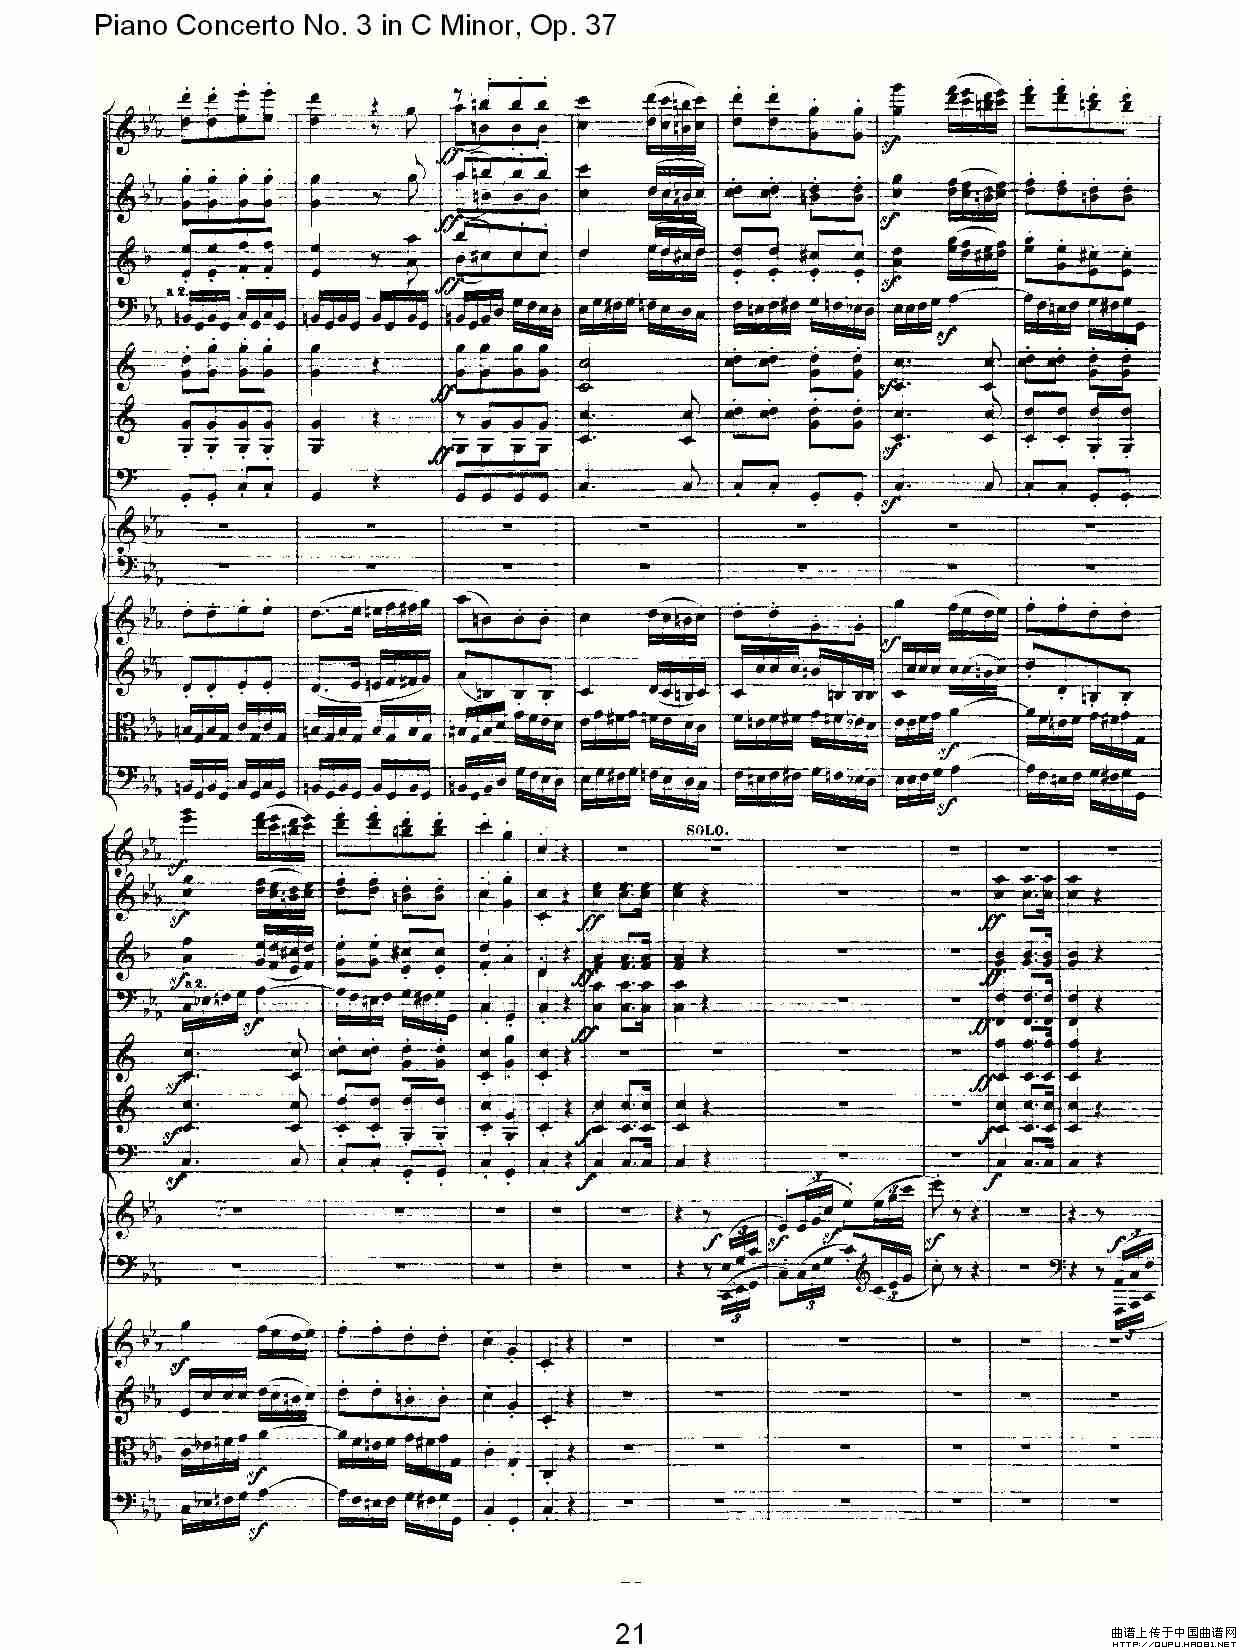 《C小调钢琴第三协奏曲 Op.37  第三乐章》钢琴曲谱图分享